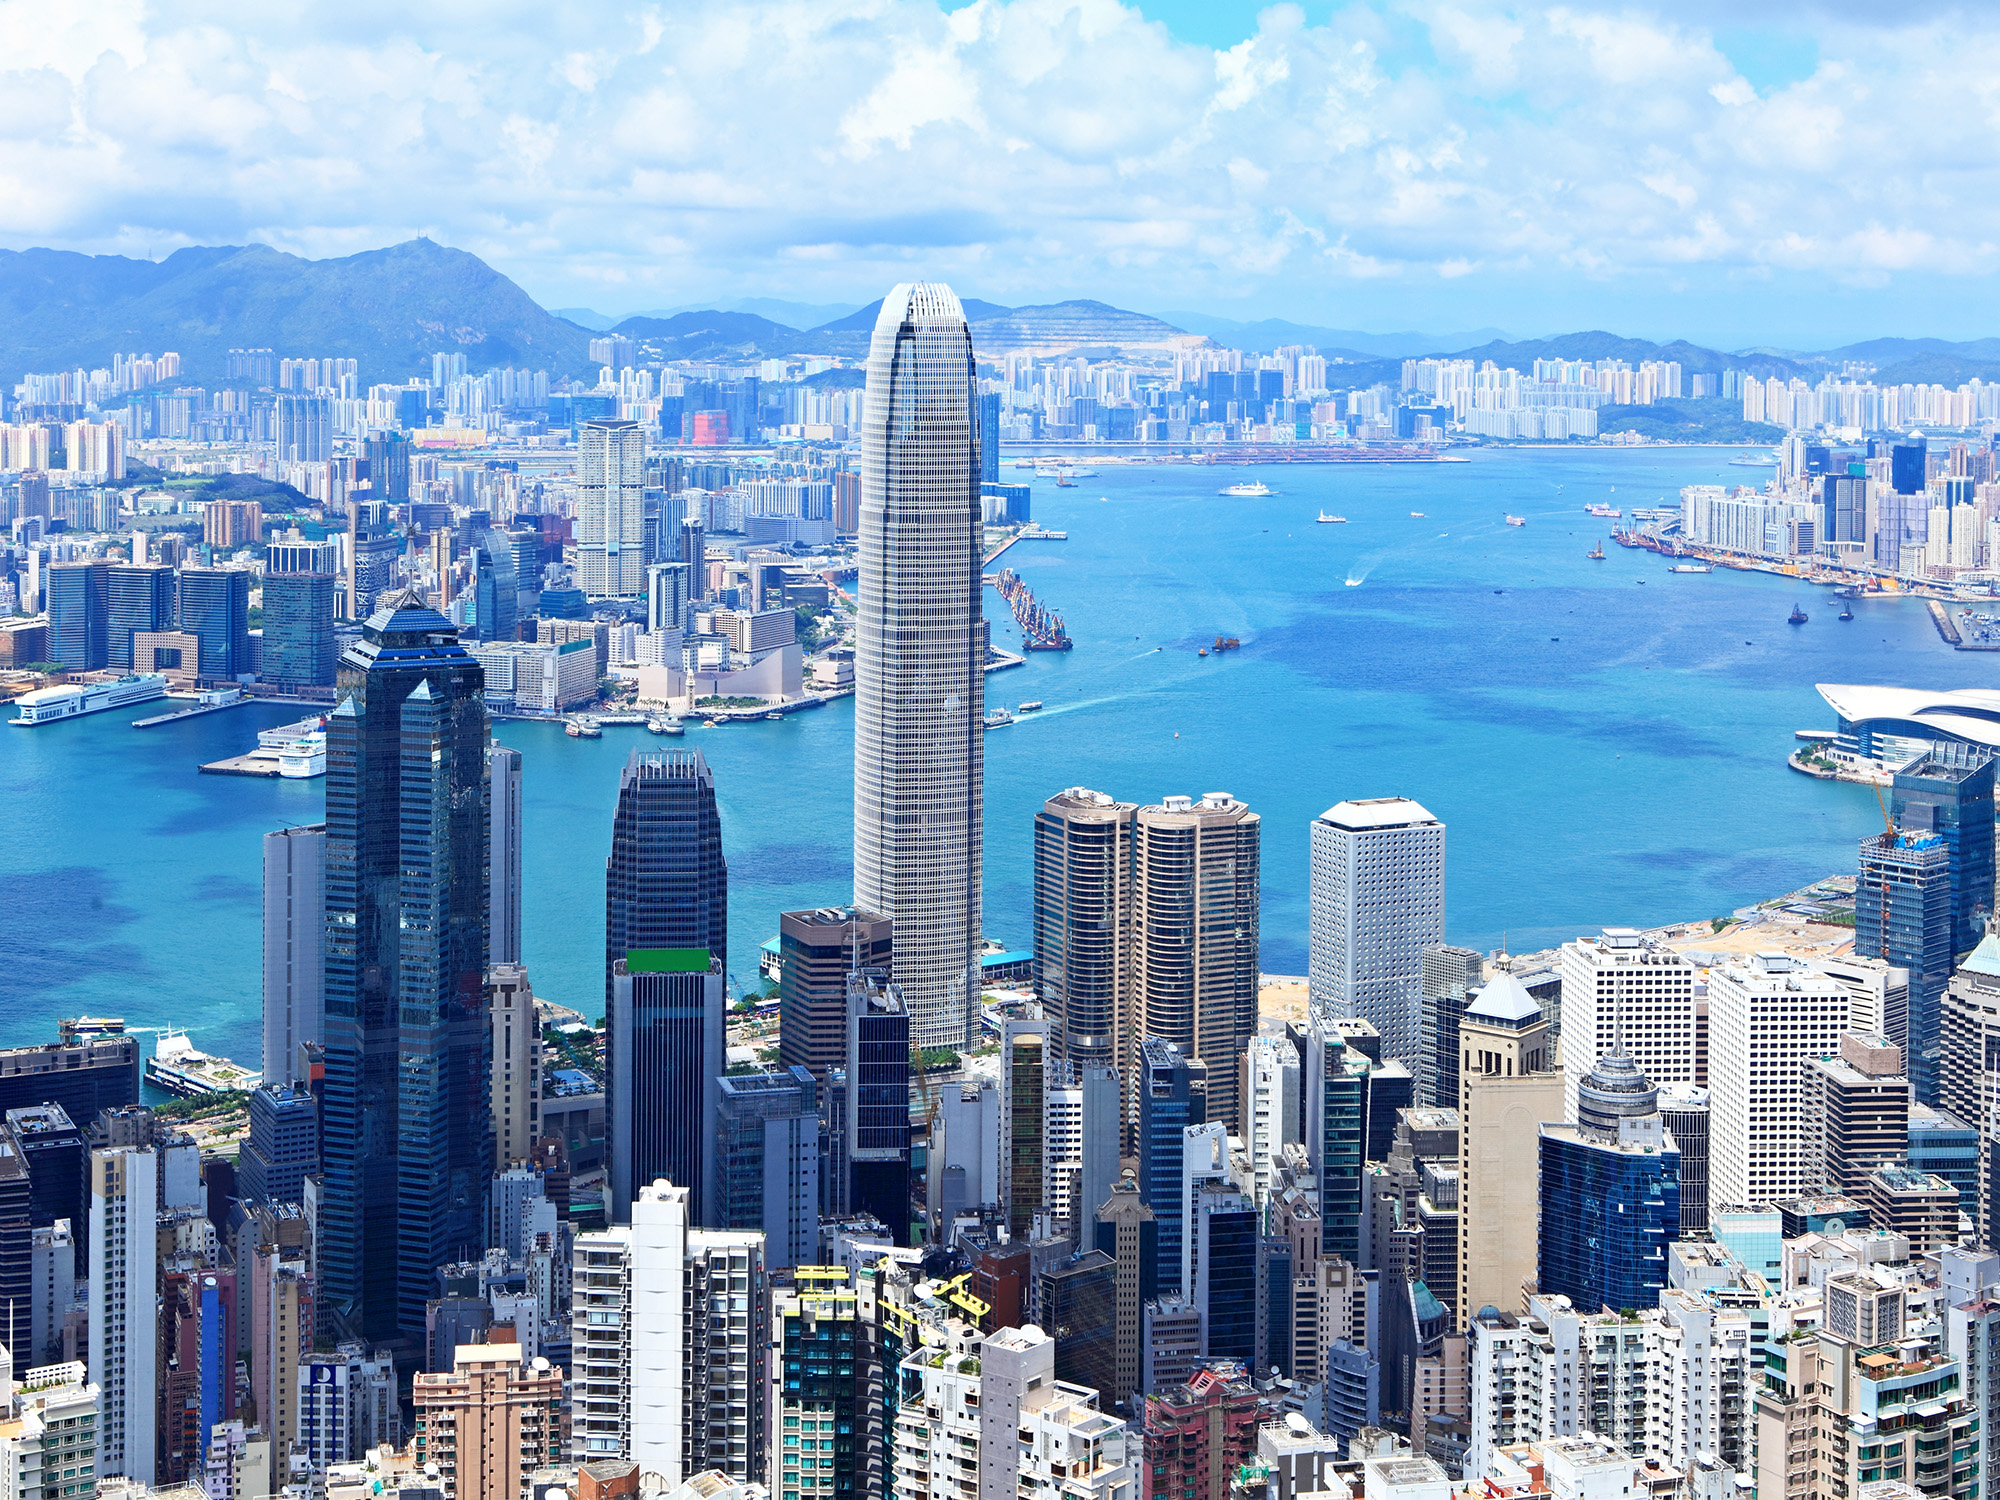 Hong-Kong et Macao, au croisement des cultures